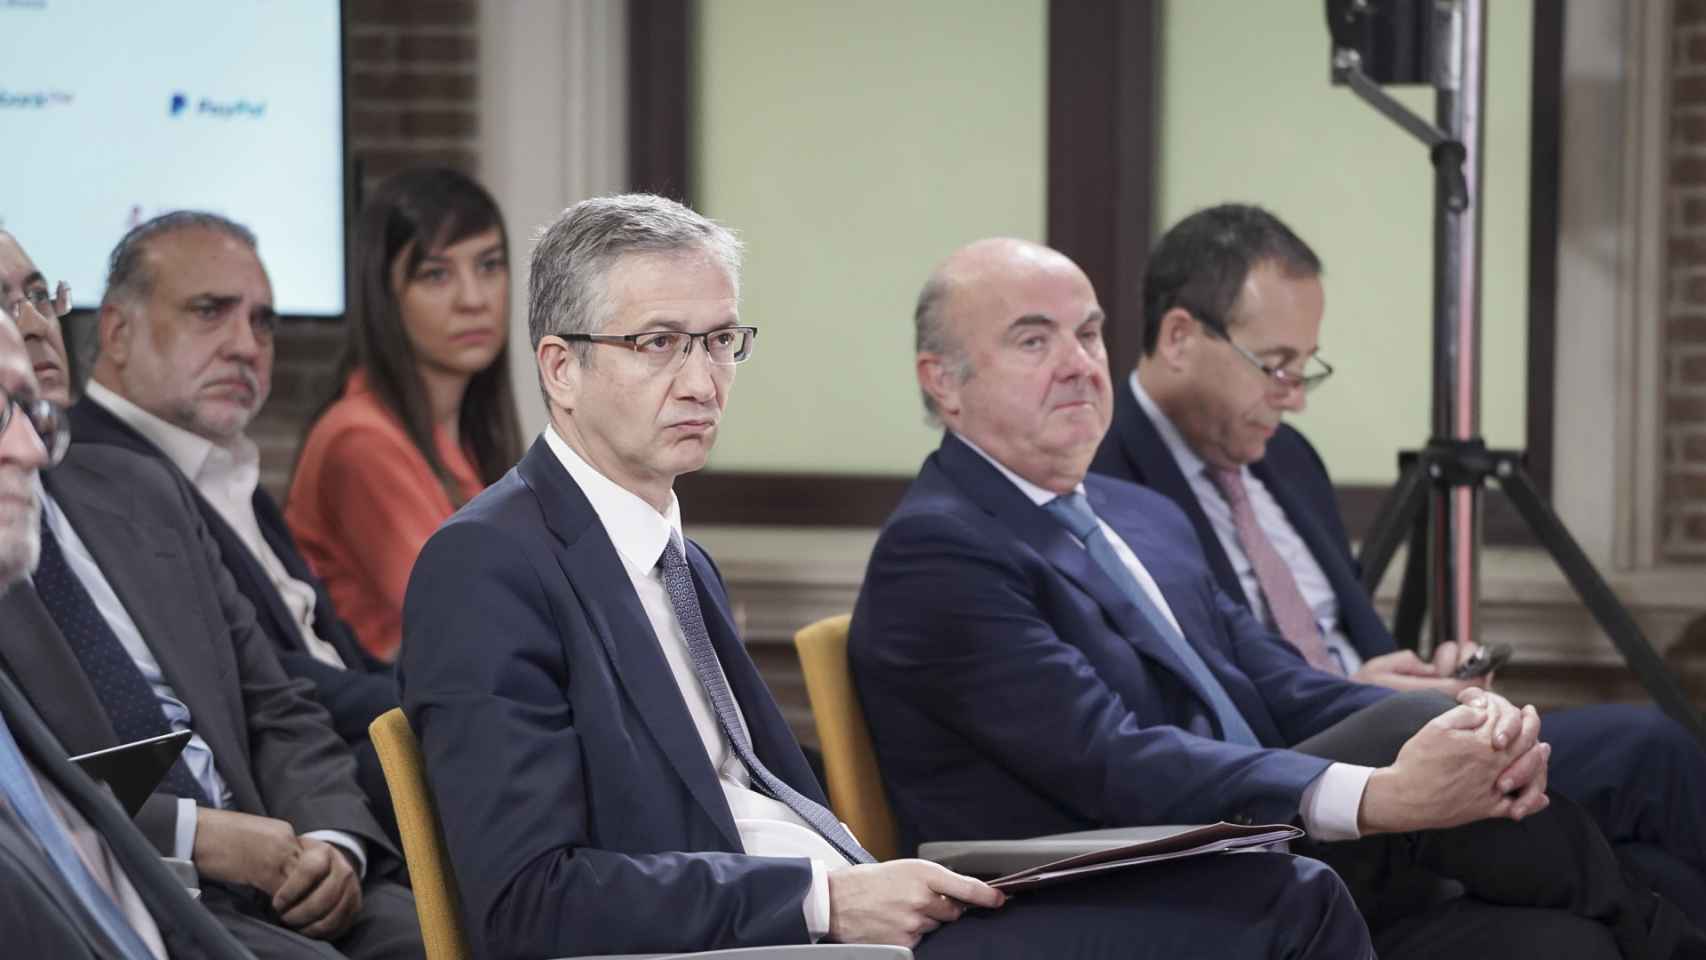 Pablo Hernández de Cos, gobernador del Banco de España, junto con Luis de Guindos, vicepresidente del BCE, y Gonzalo Gortázar, consejero delegado de CaixaBank, durante el IV Observatorio de las Finanzas de EL ESPAÑOL e Invertia.